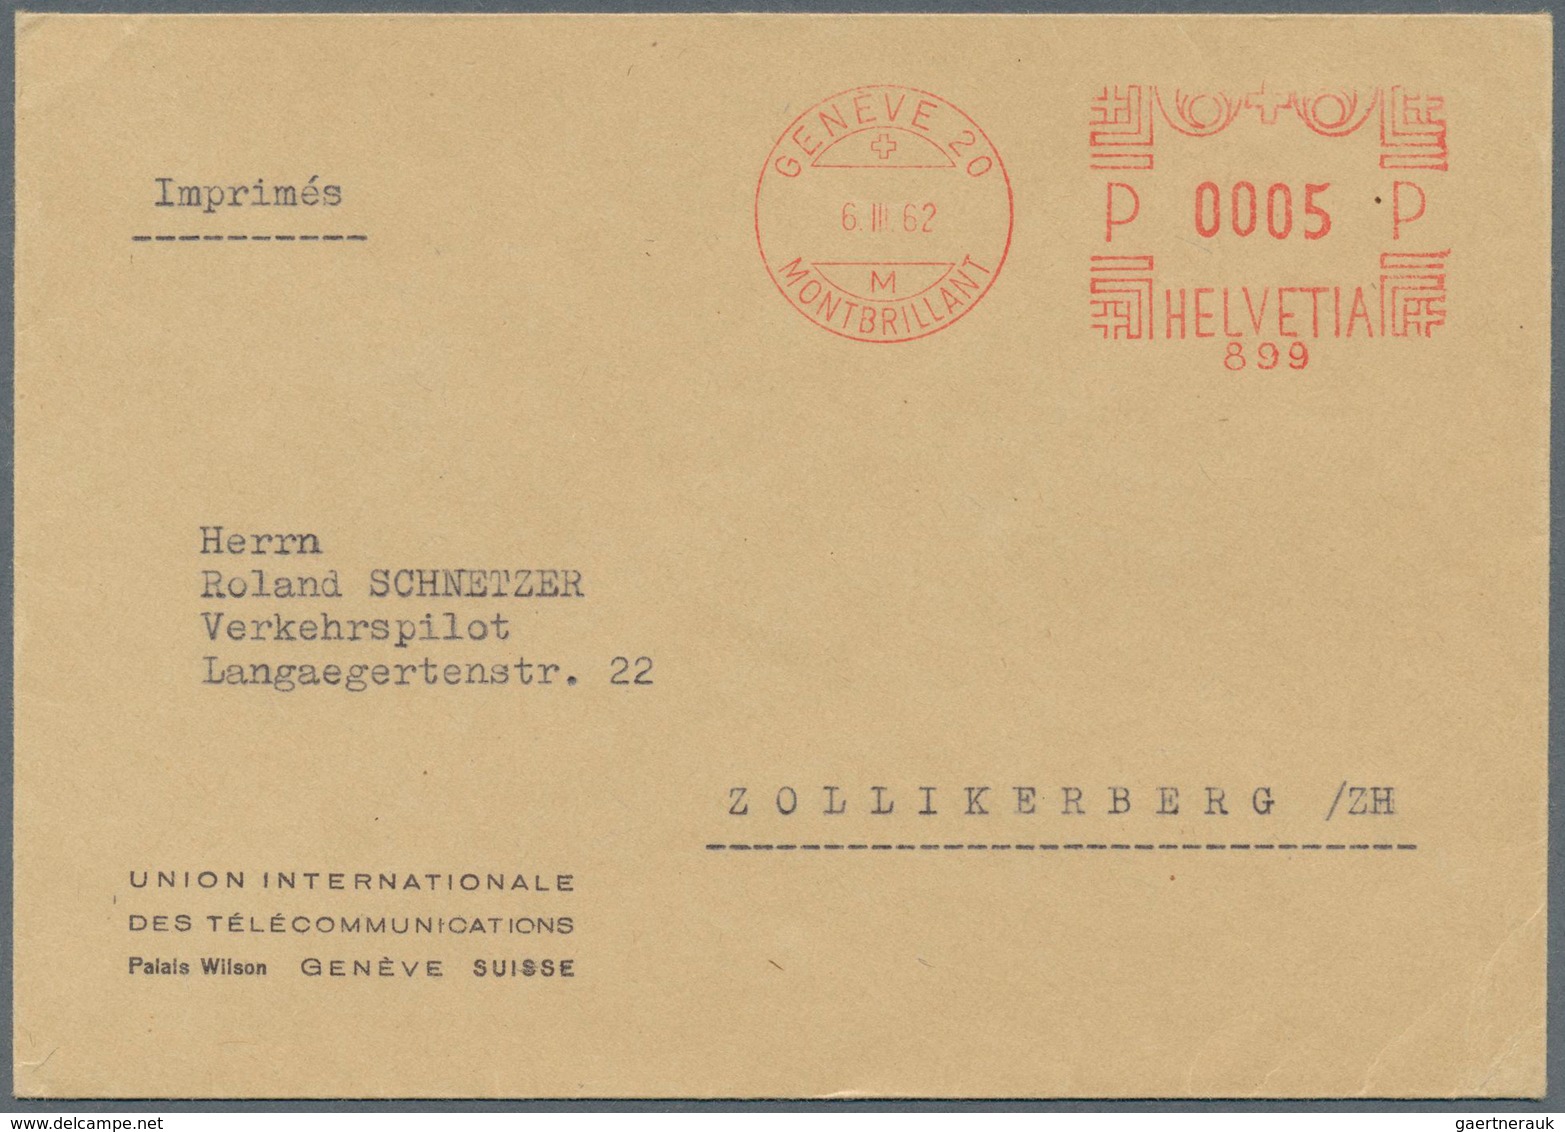 Thematik: Rundfunk-Radio / broadcasting-radio: 1927/2003, umfangreiche Sammlung "Internationale Fern